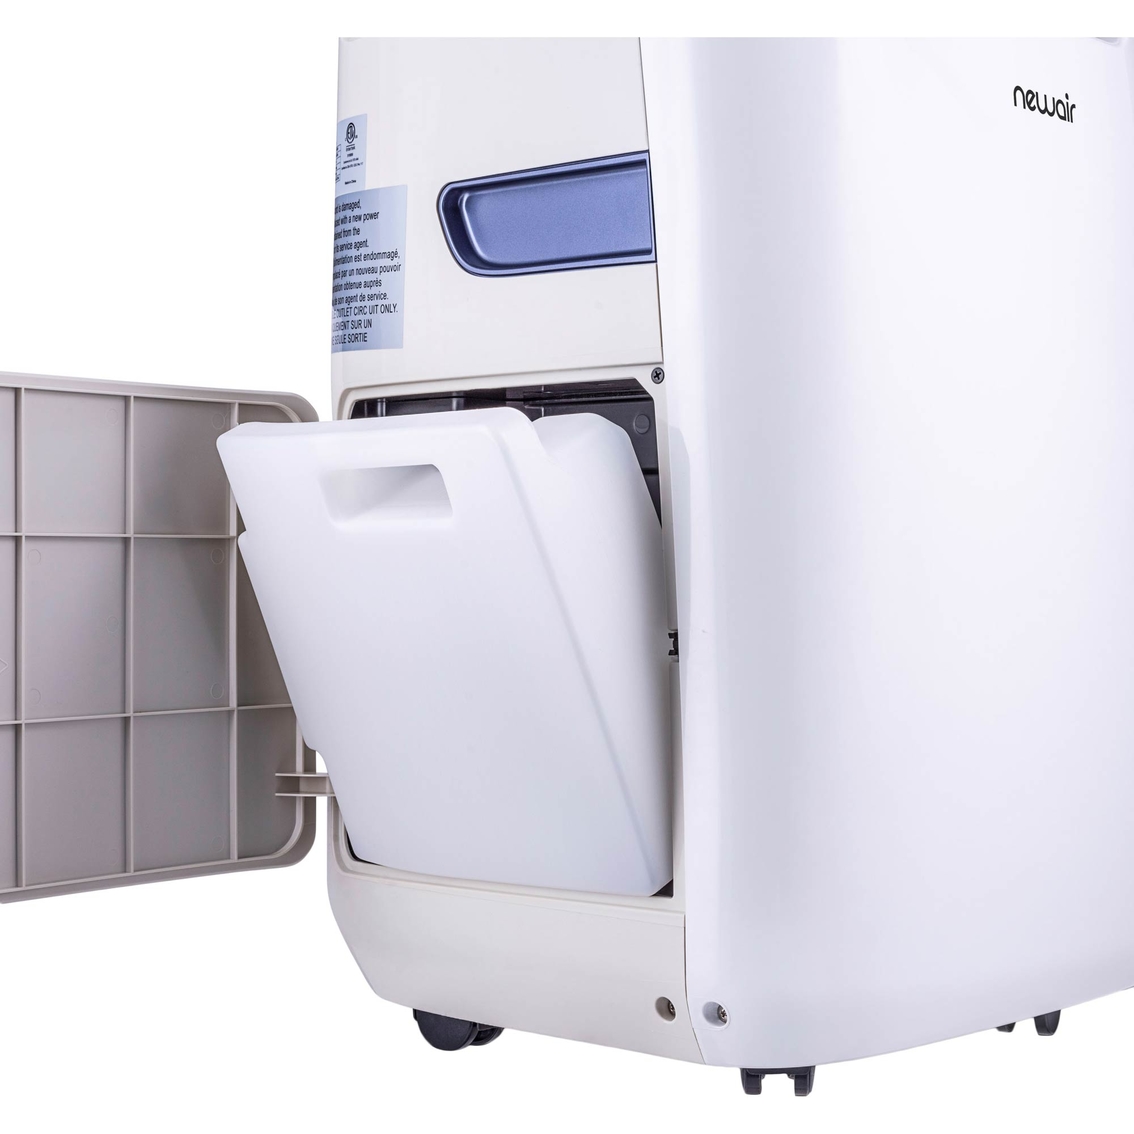 NewAir Portable Air Conditioner, 8,600 BTU (8,200 BTU DOE) With Remote - Image 6 of 10